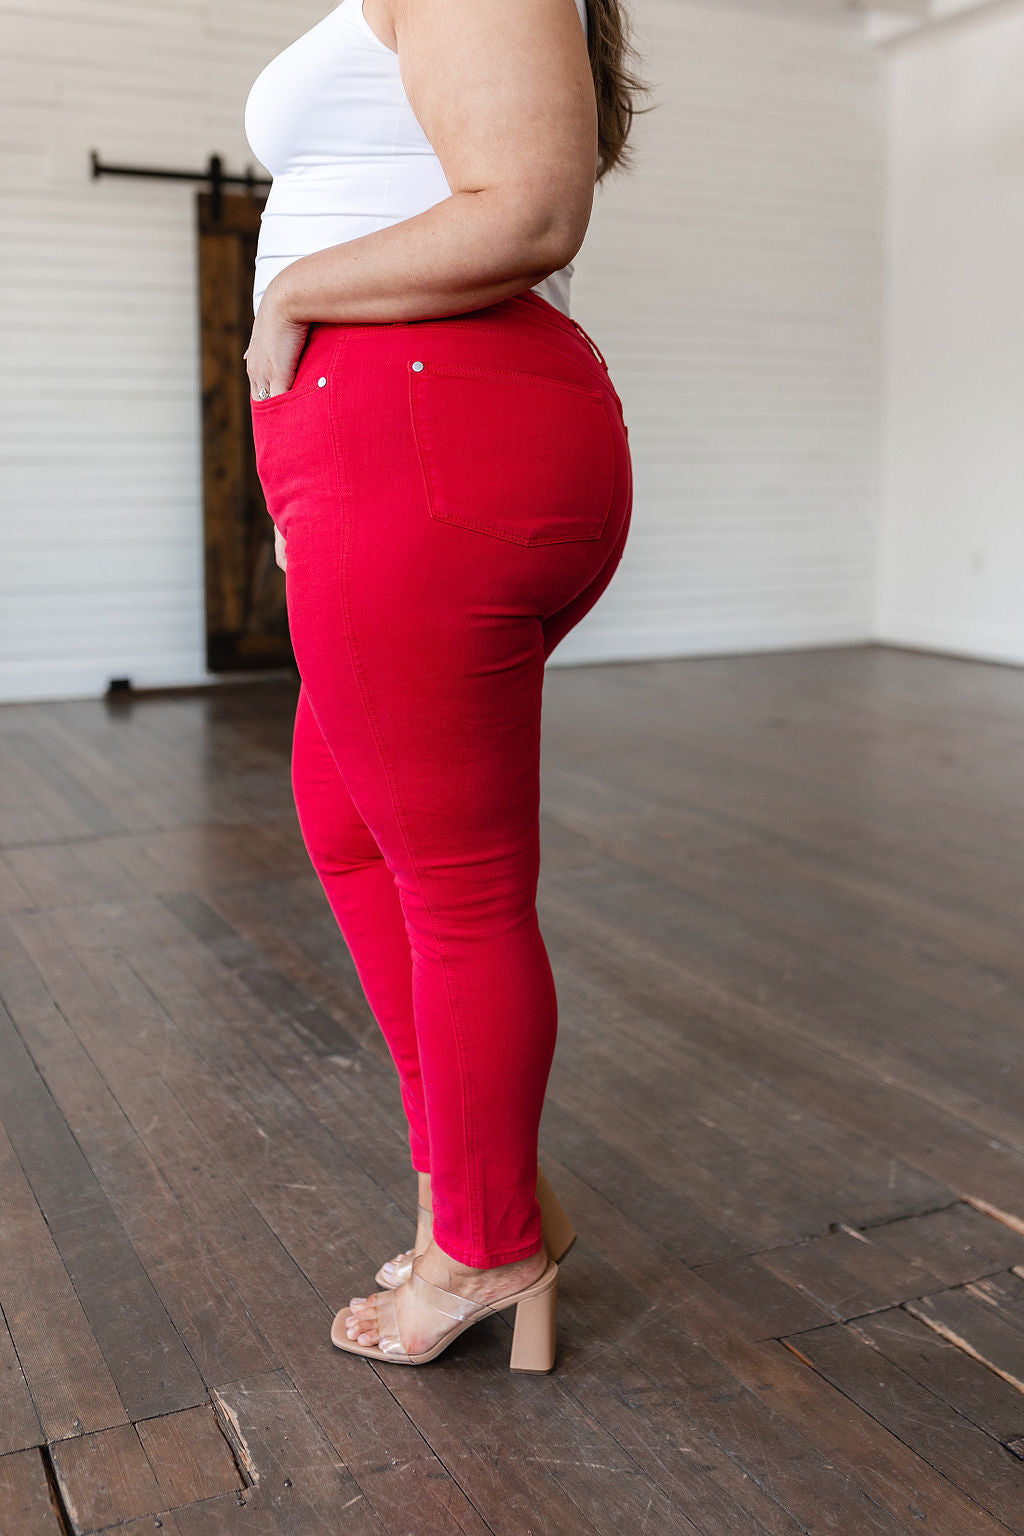 Jean skinny teint en pièce Ruby taille haute avec haut gainant en rouge (exclusivité en ligne)